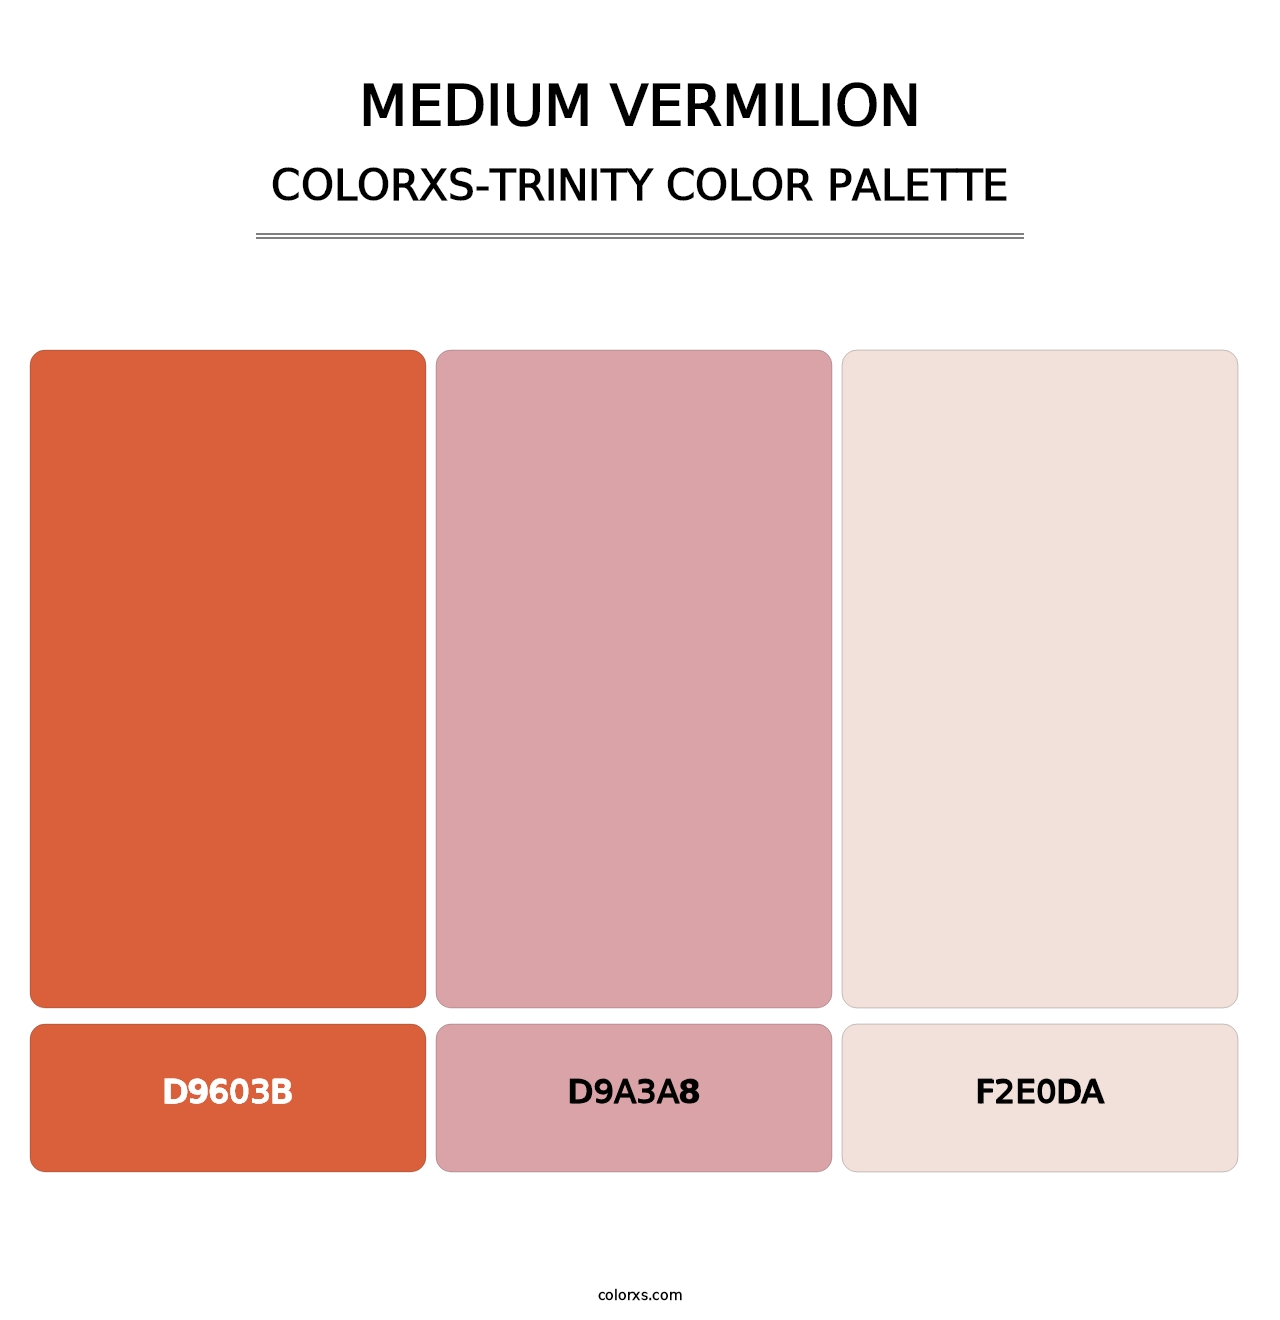 Medium Vermilion - Colorxs Trinity Palette